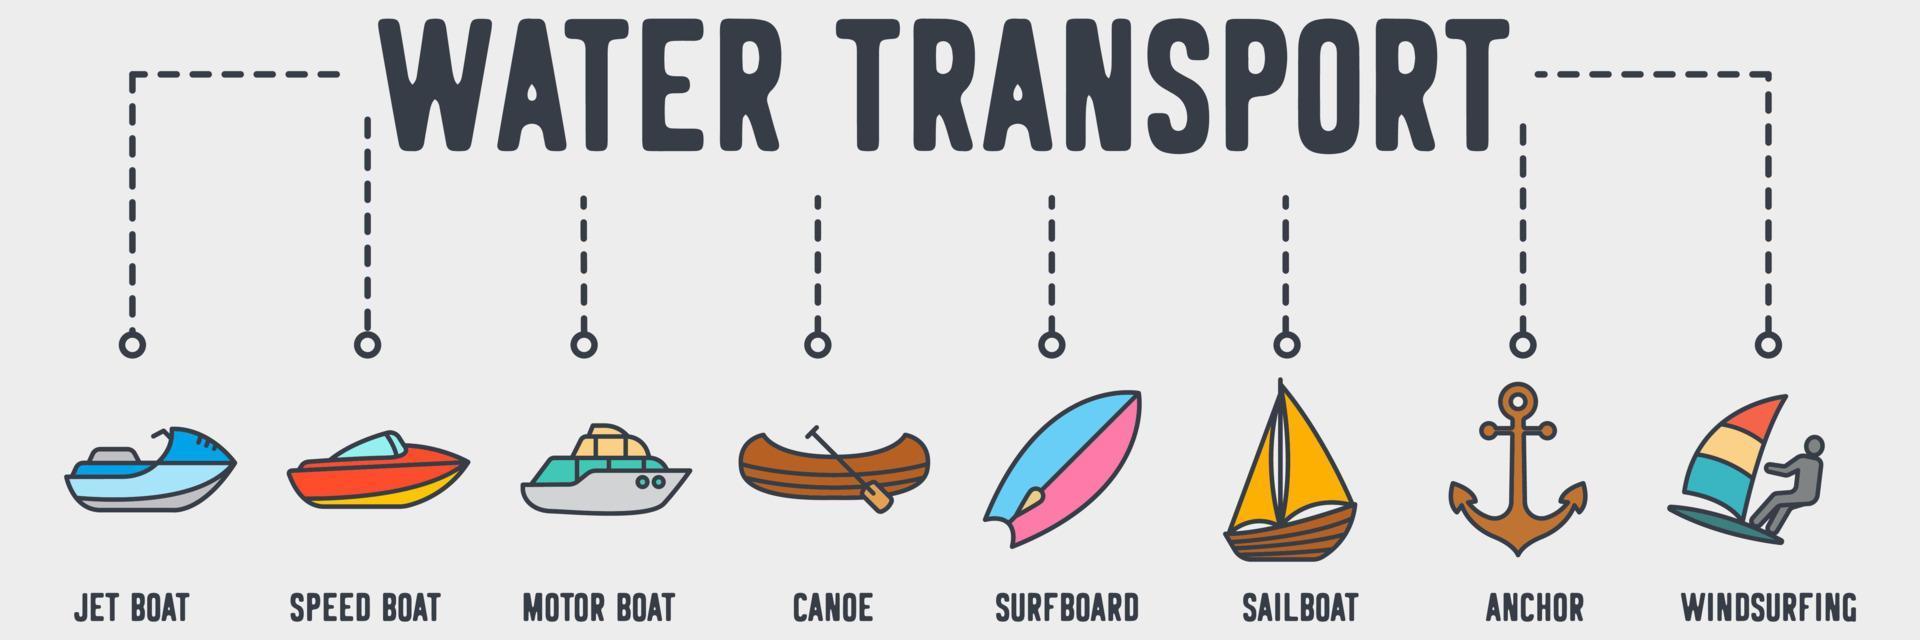 icono de la web de transporte de agua. lancha motora, lancha rápida, lancha motora, canoa, tabla de surf, velero, ancla, concepto de ilustración vectorial de windsurf. vector